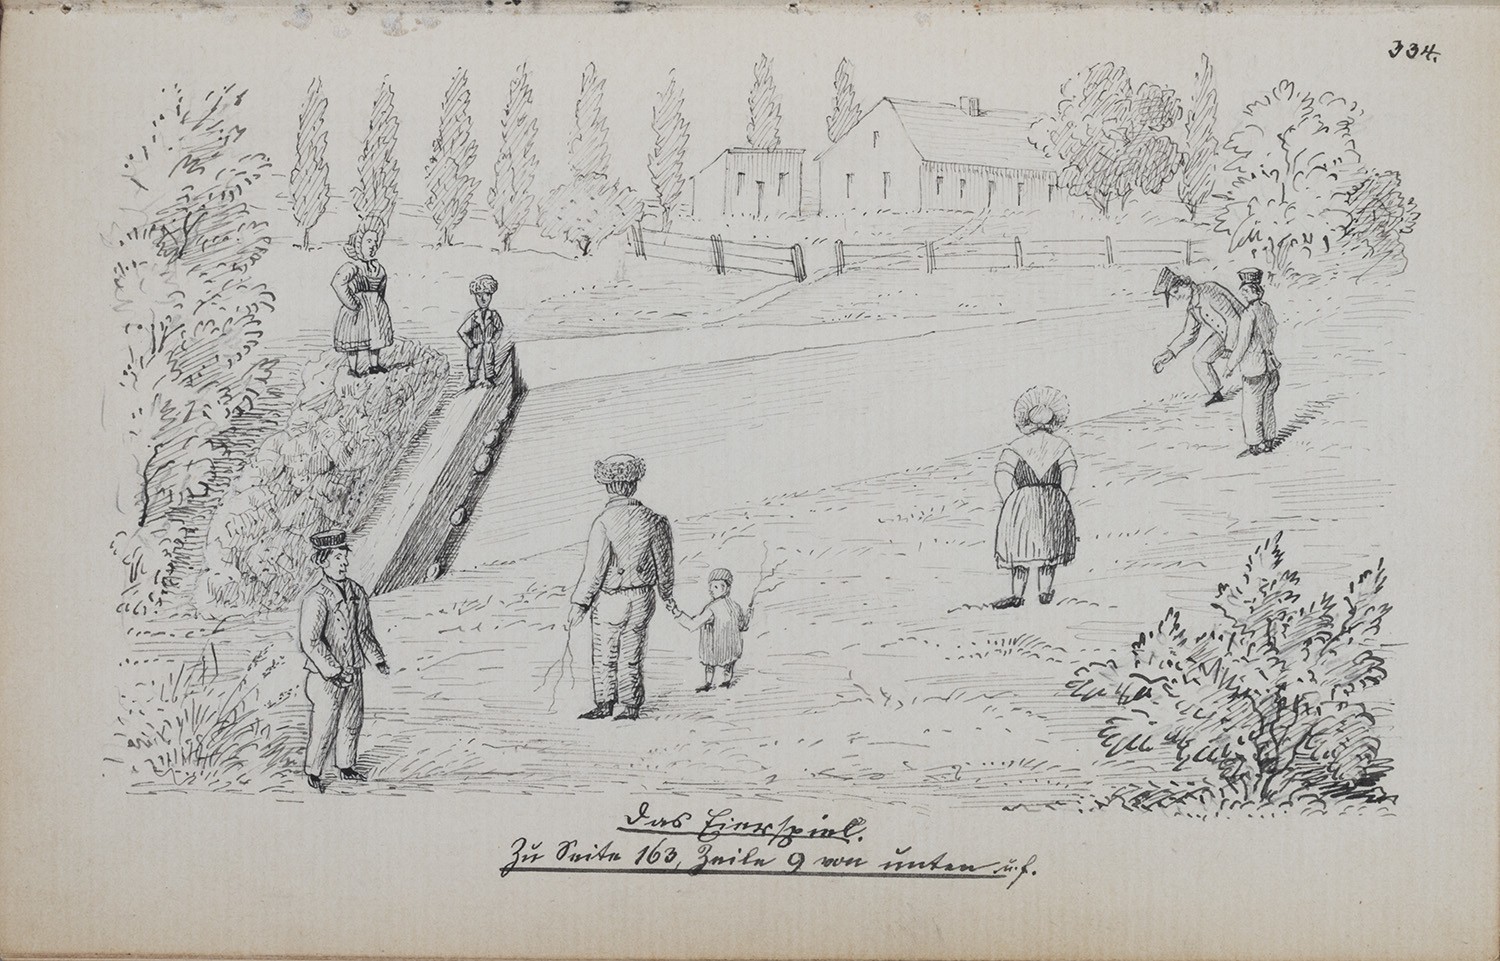 Gahry (Kr. Cottbus): Dorfbewohner beim "Eierspiel" (Landesgeschichtliche Vereinigung für die Mark Brandenburg e.V., Archiv CC BY)